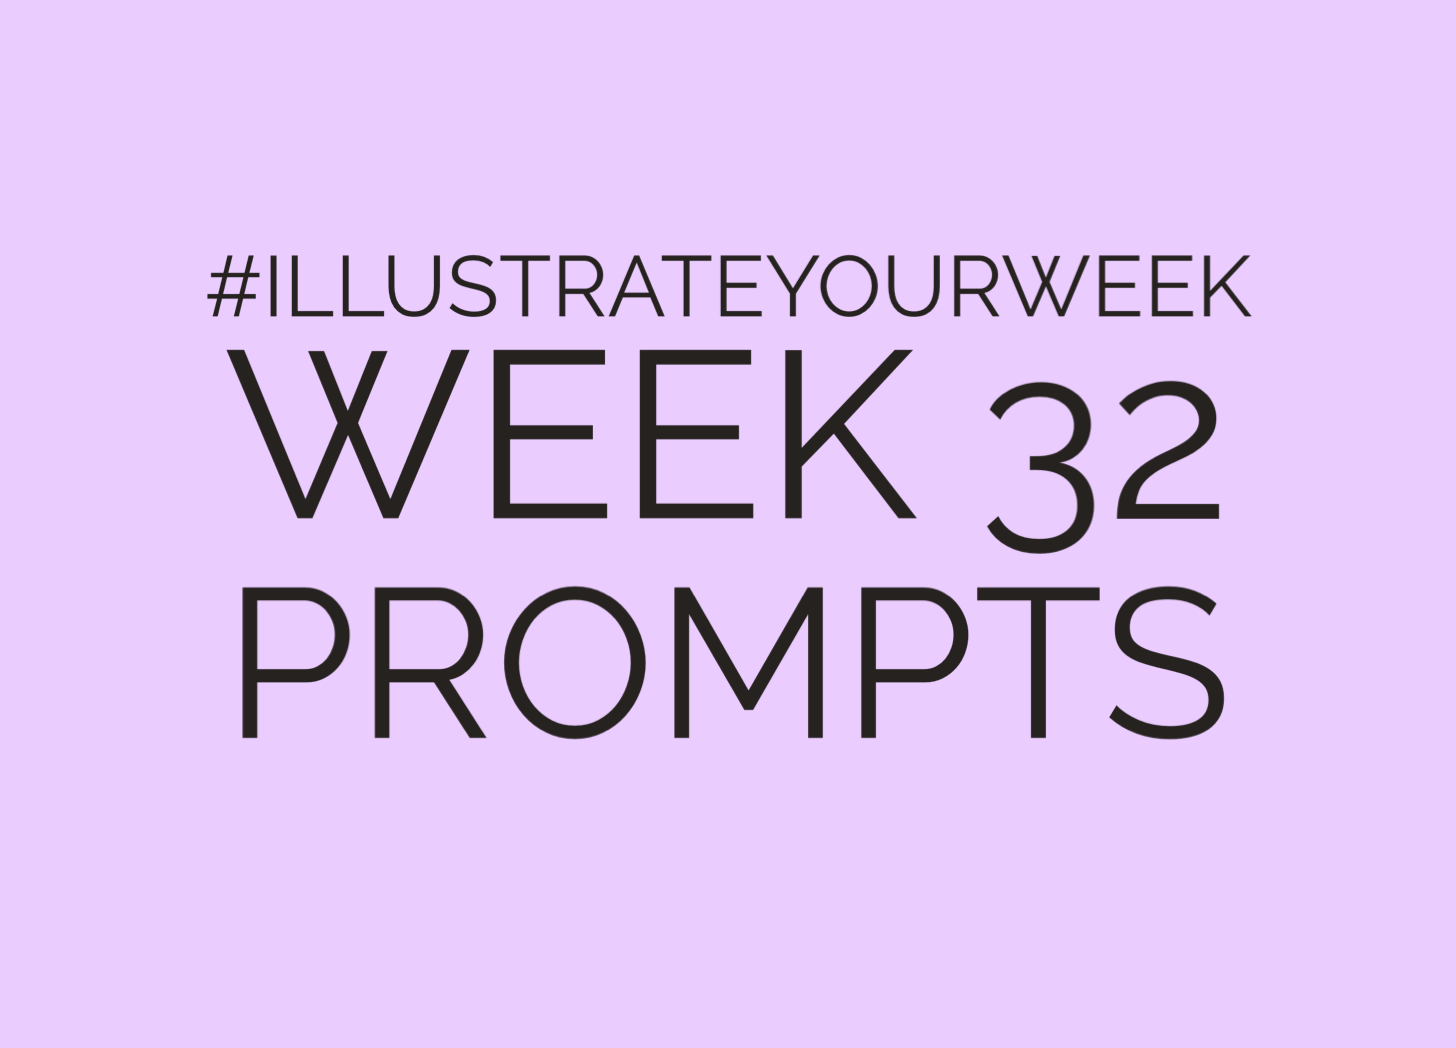 Illustrate Your Week - Week 32 Prompts